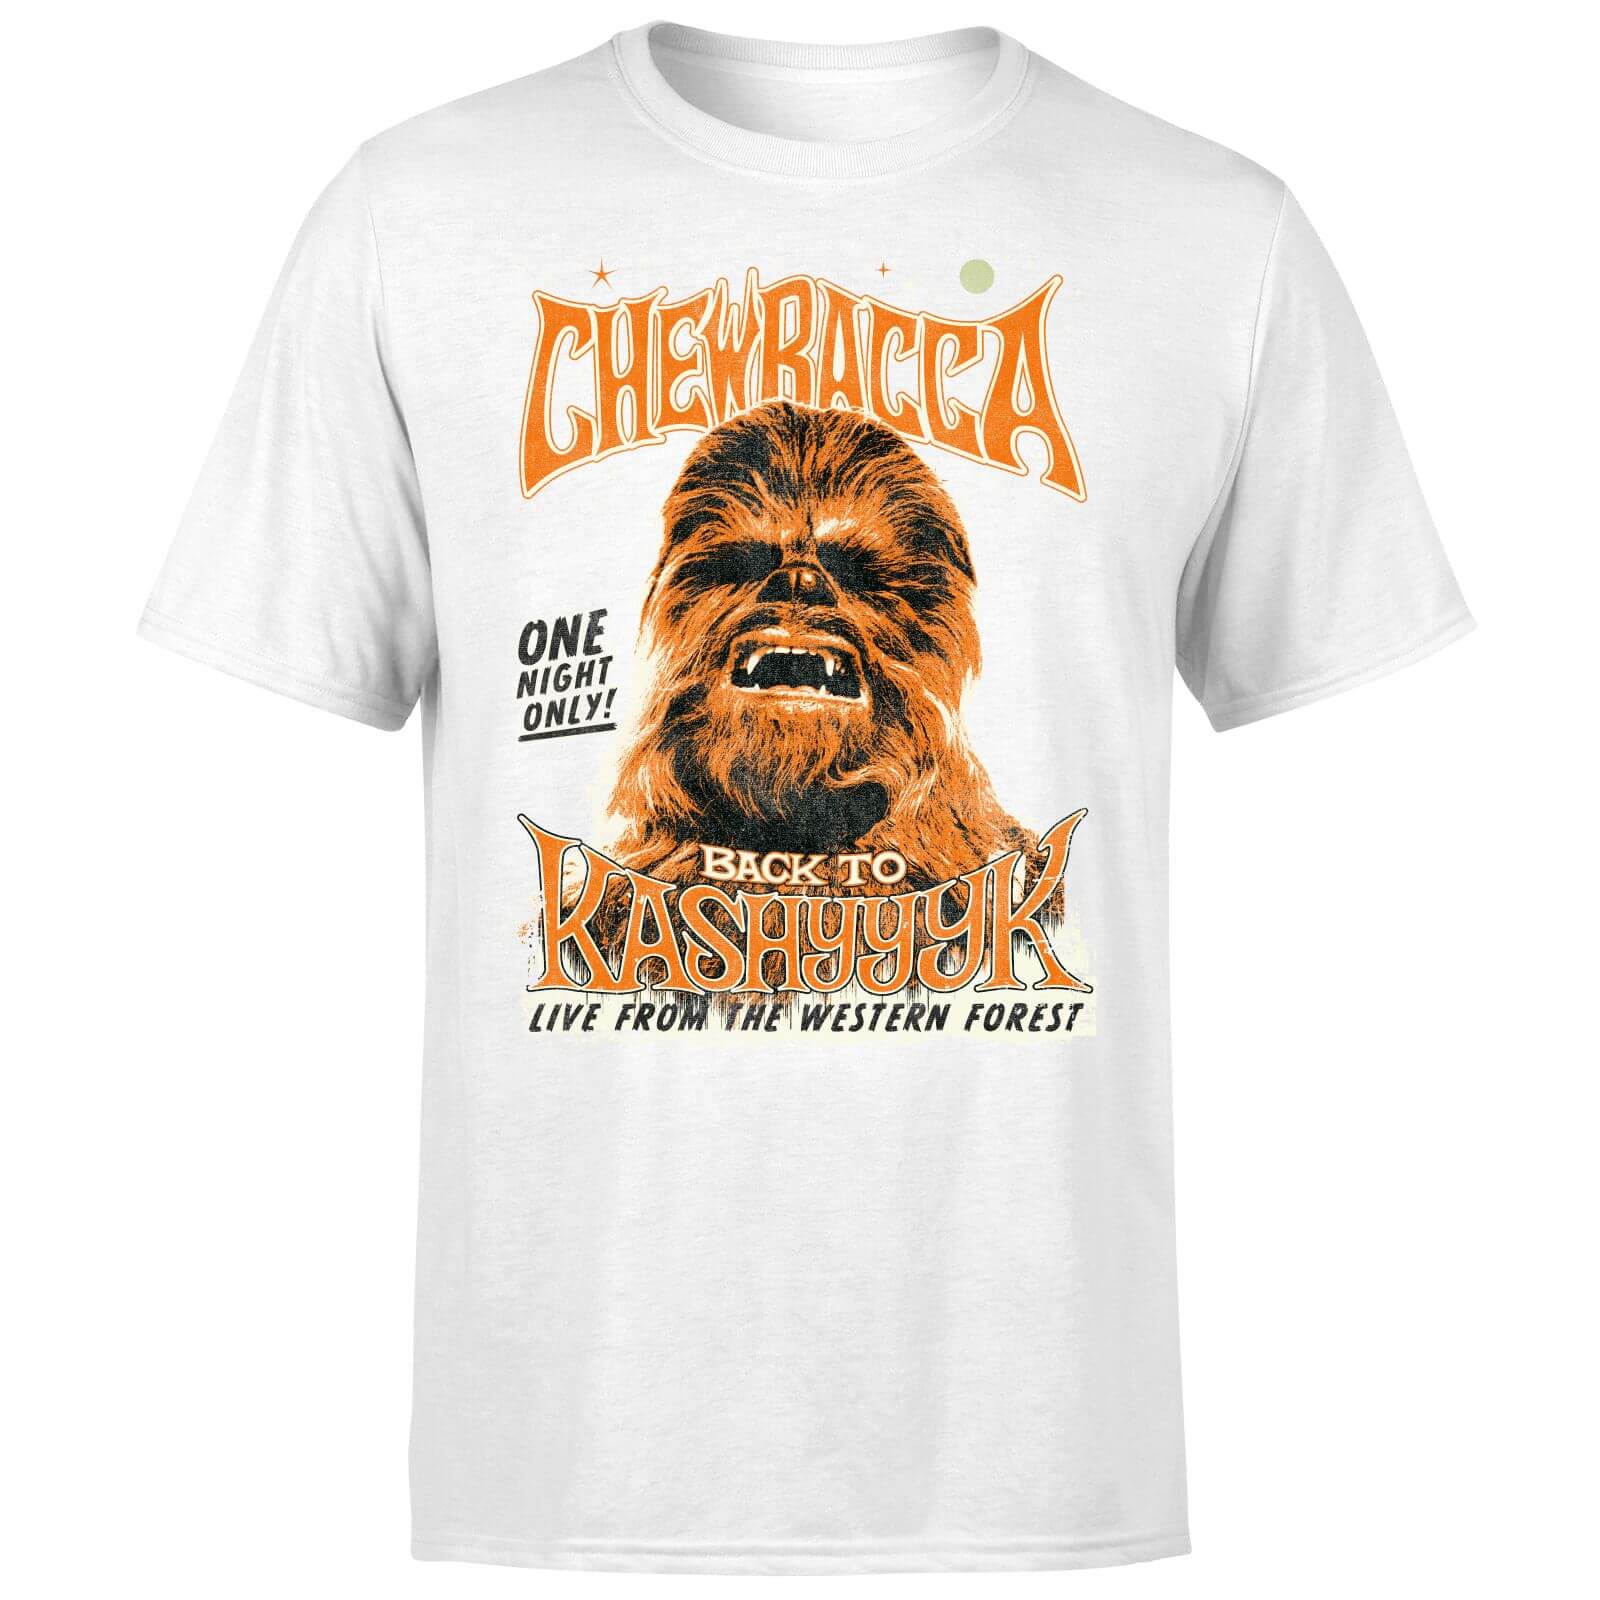 chewbacca t shirt